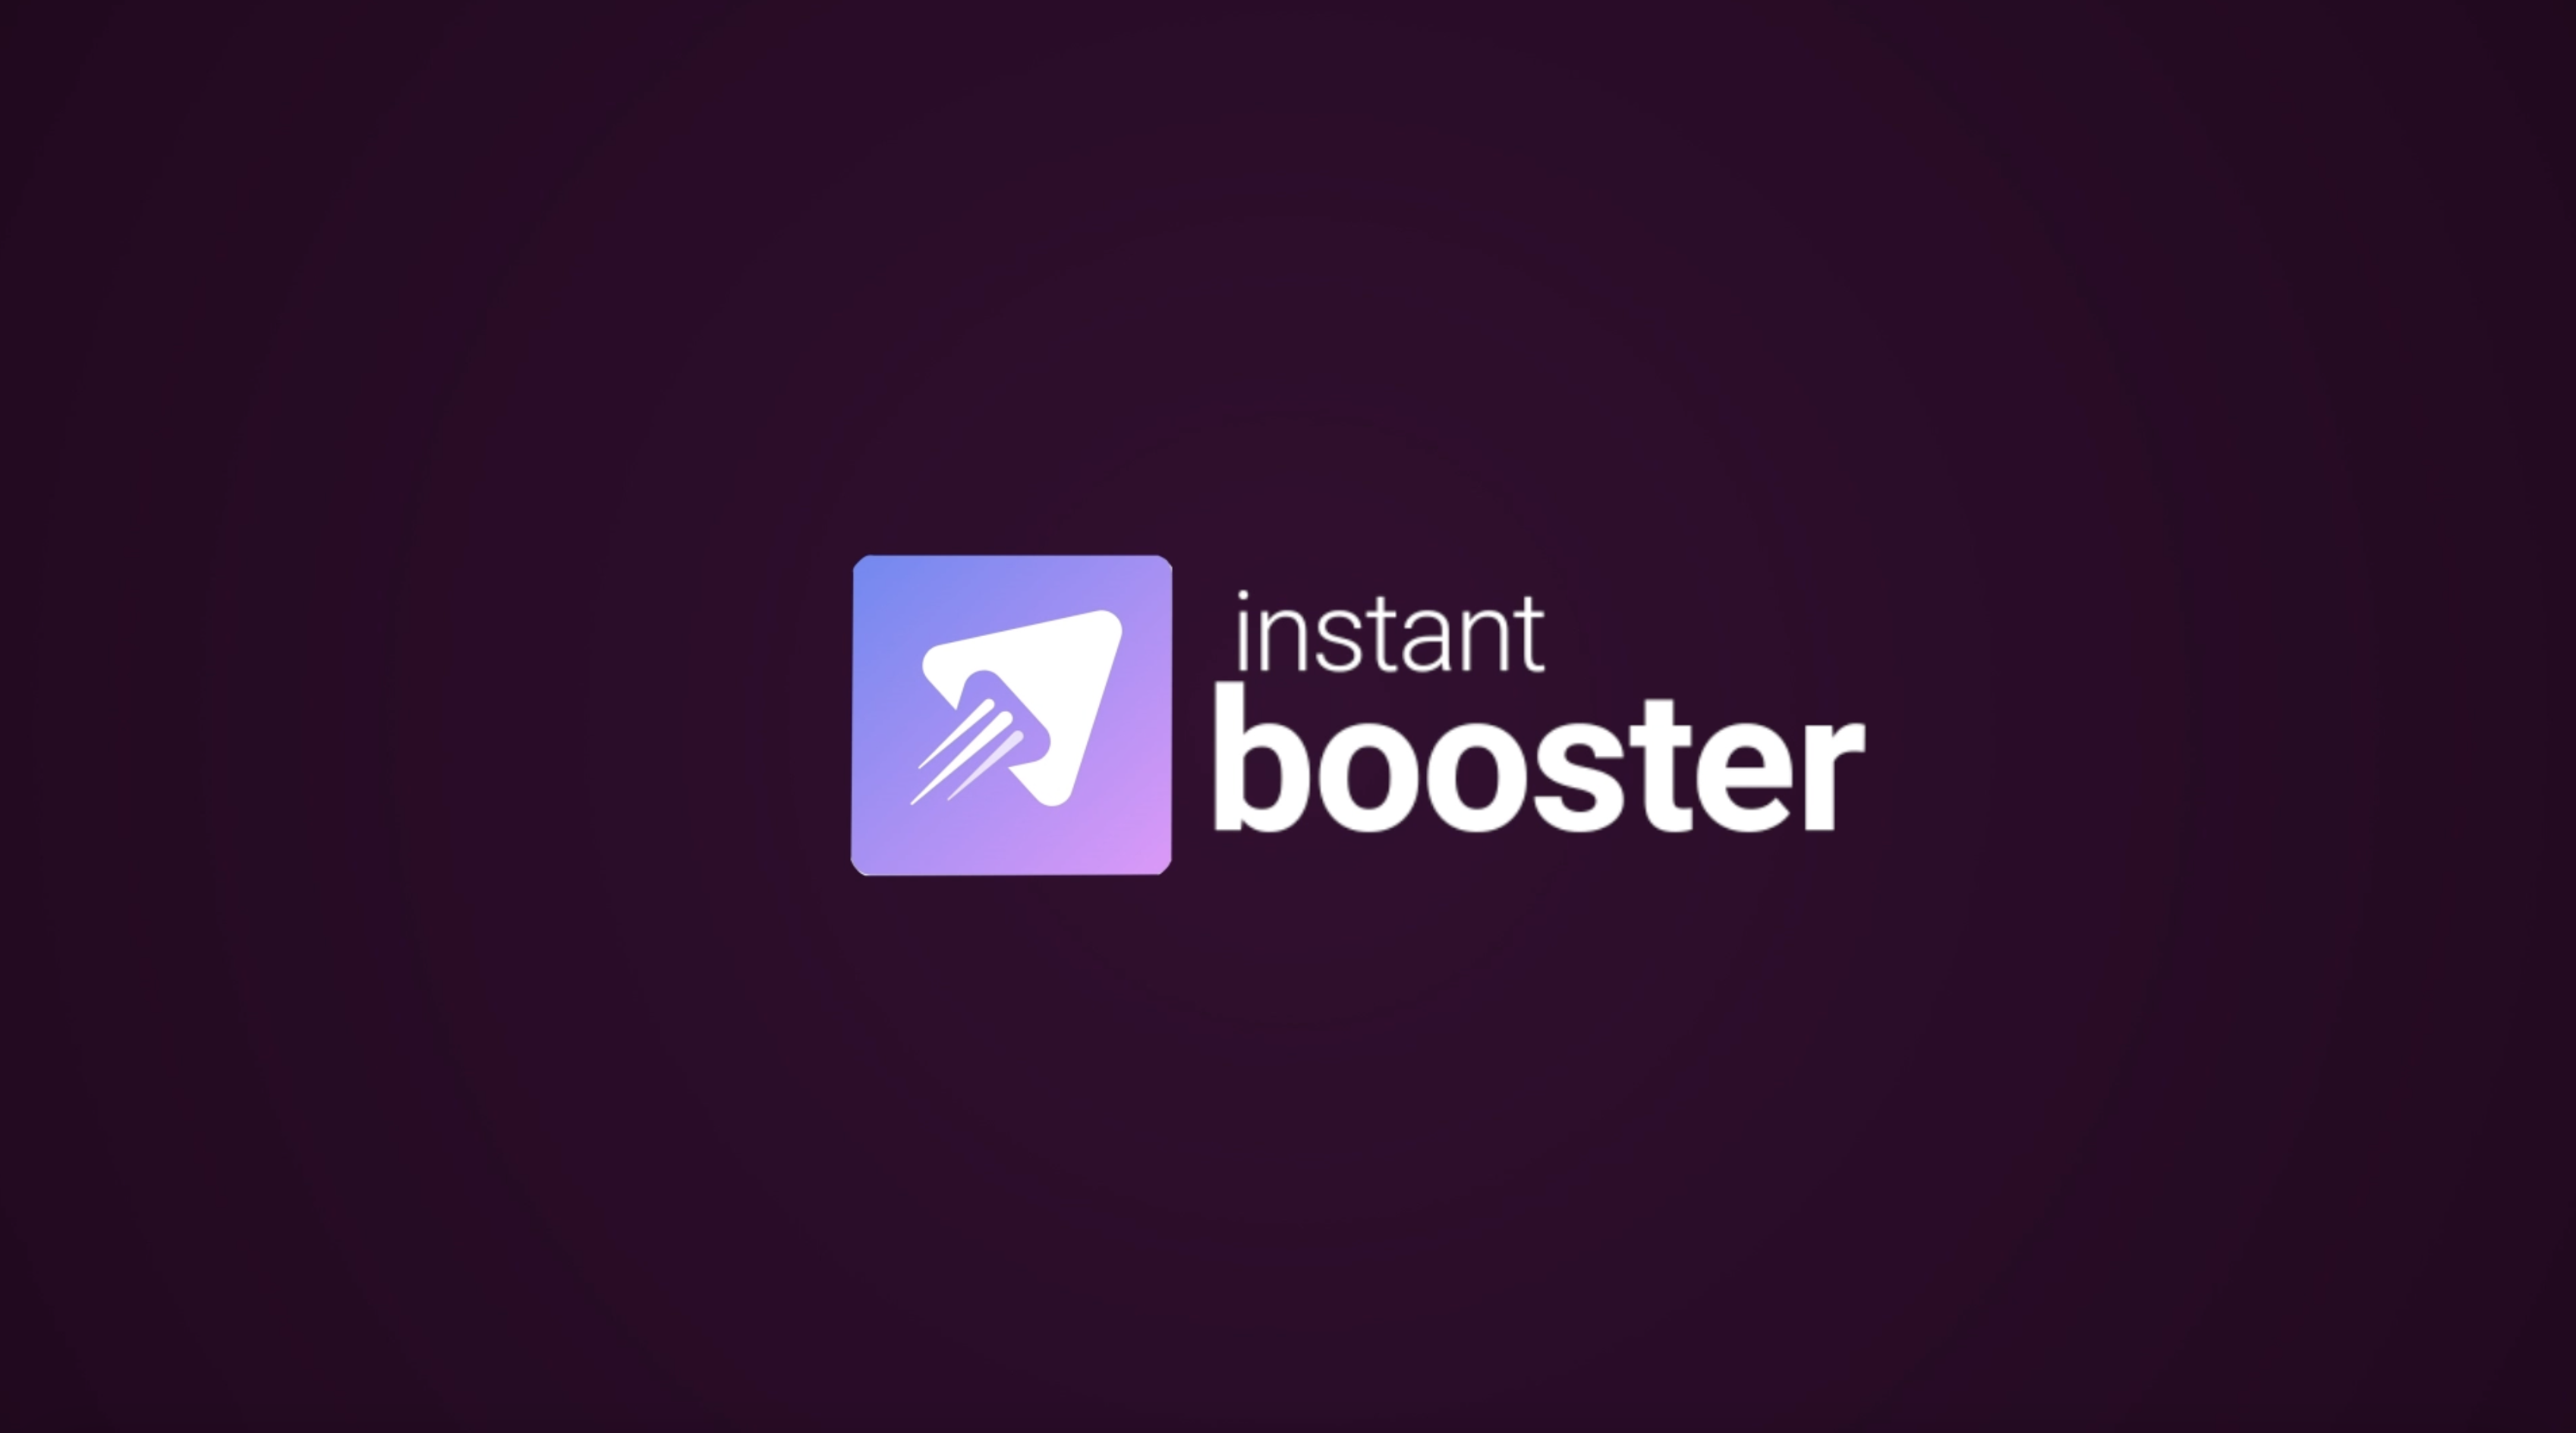 Станьте профессионалом и экономьте свое время с помощью InstantBooster!✅